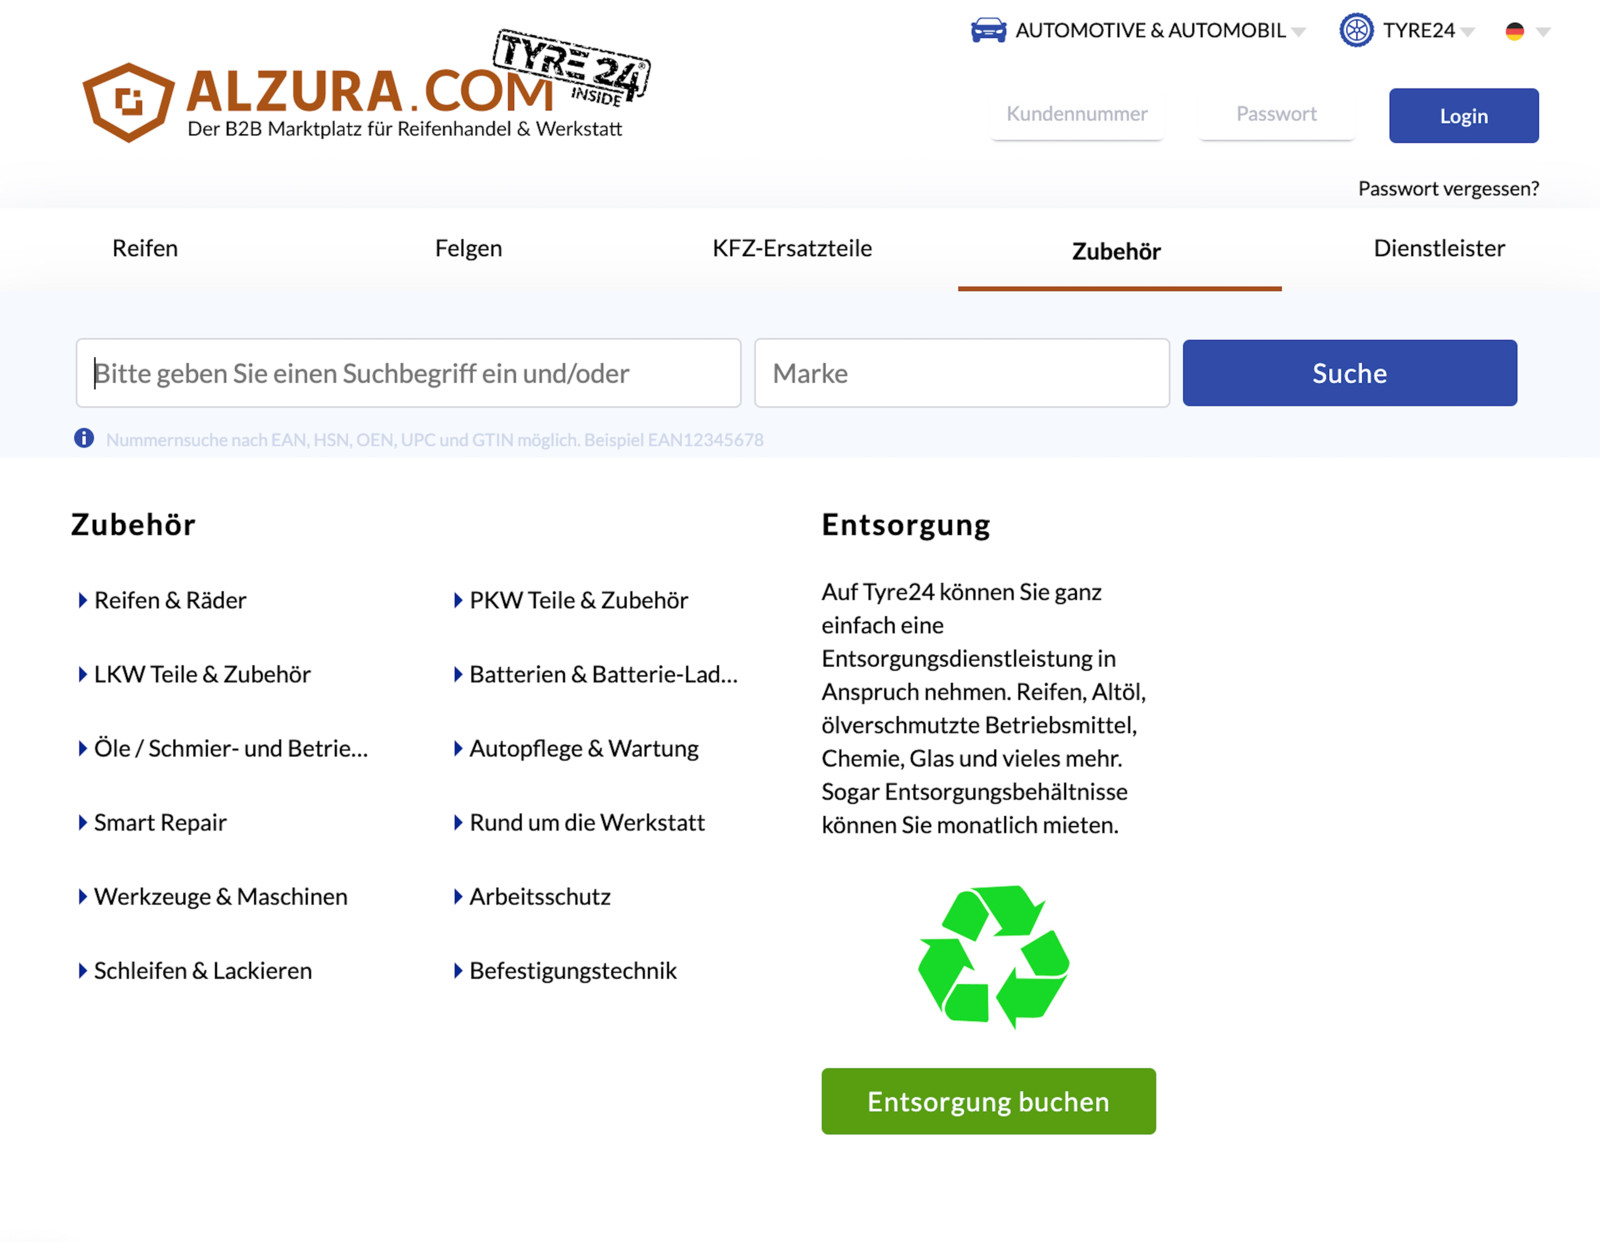 Über Alzura Tyre24 sind nun auch verschiedene Entsorgungsdienstleistungen buchbar. 